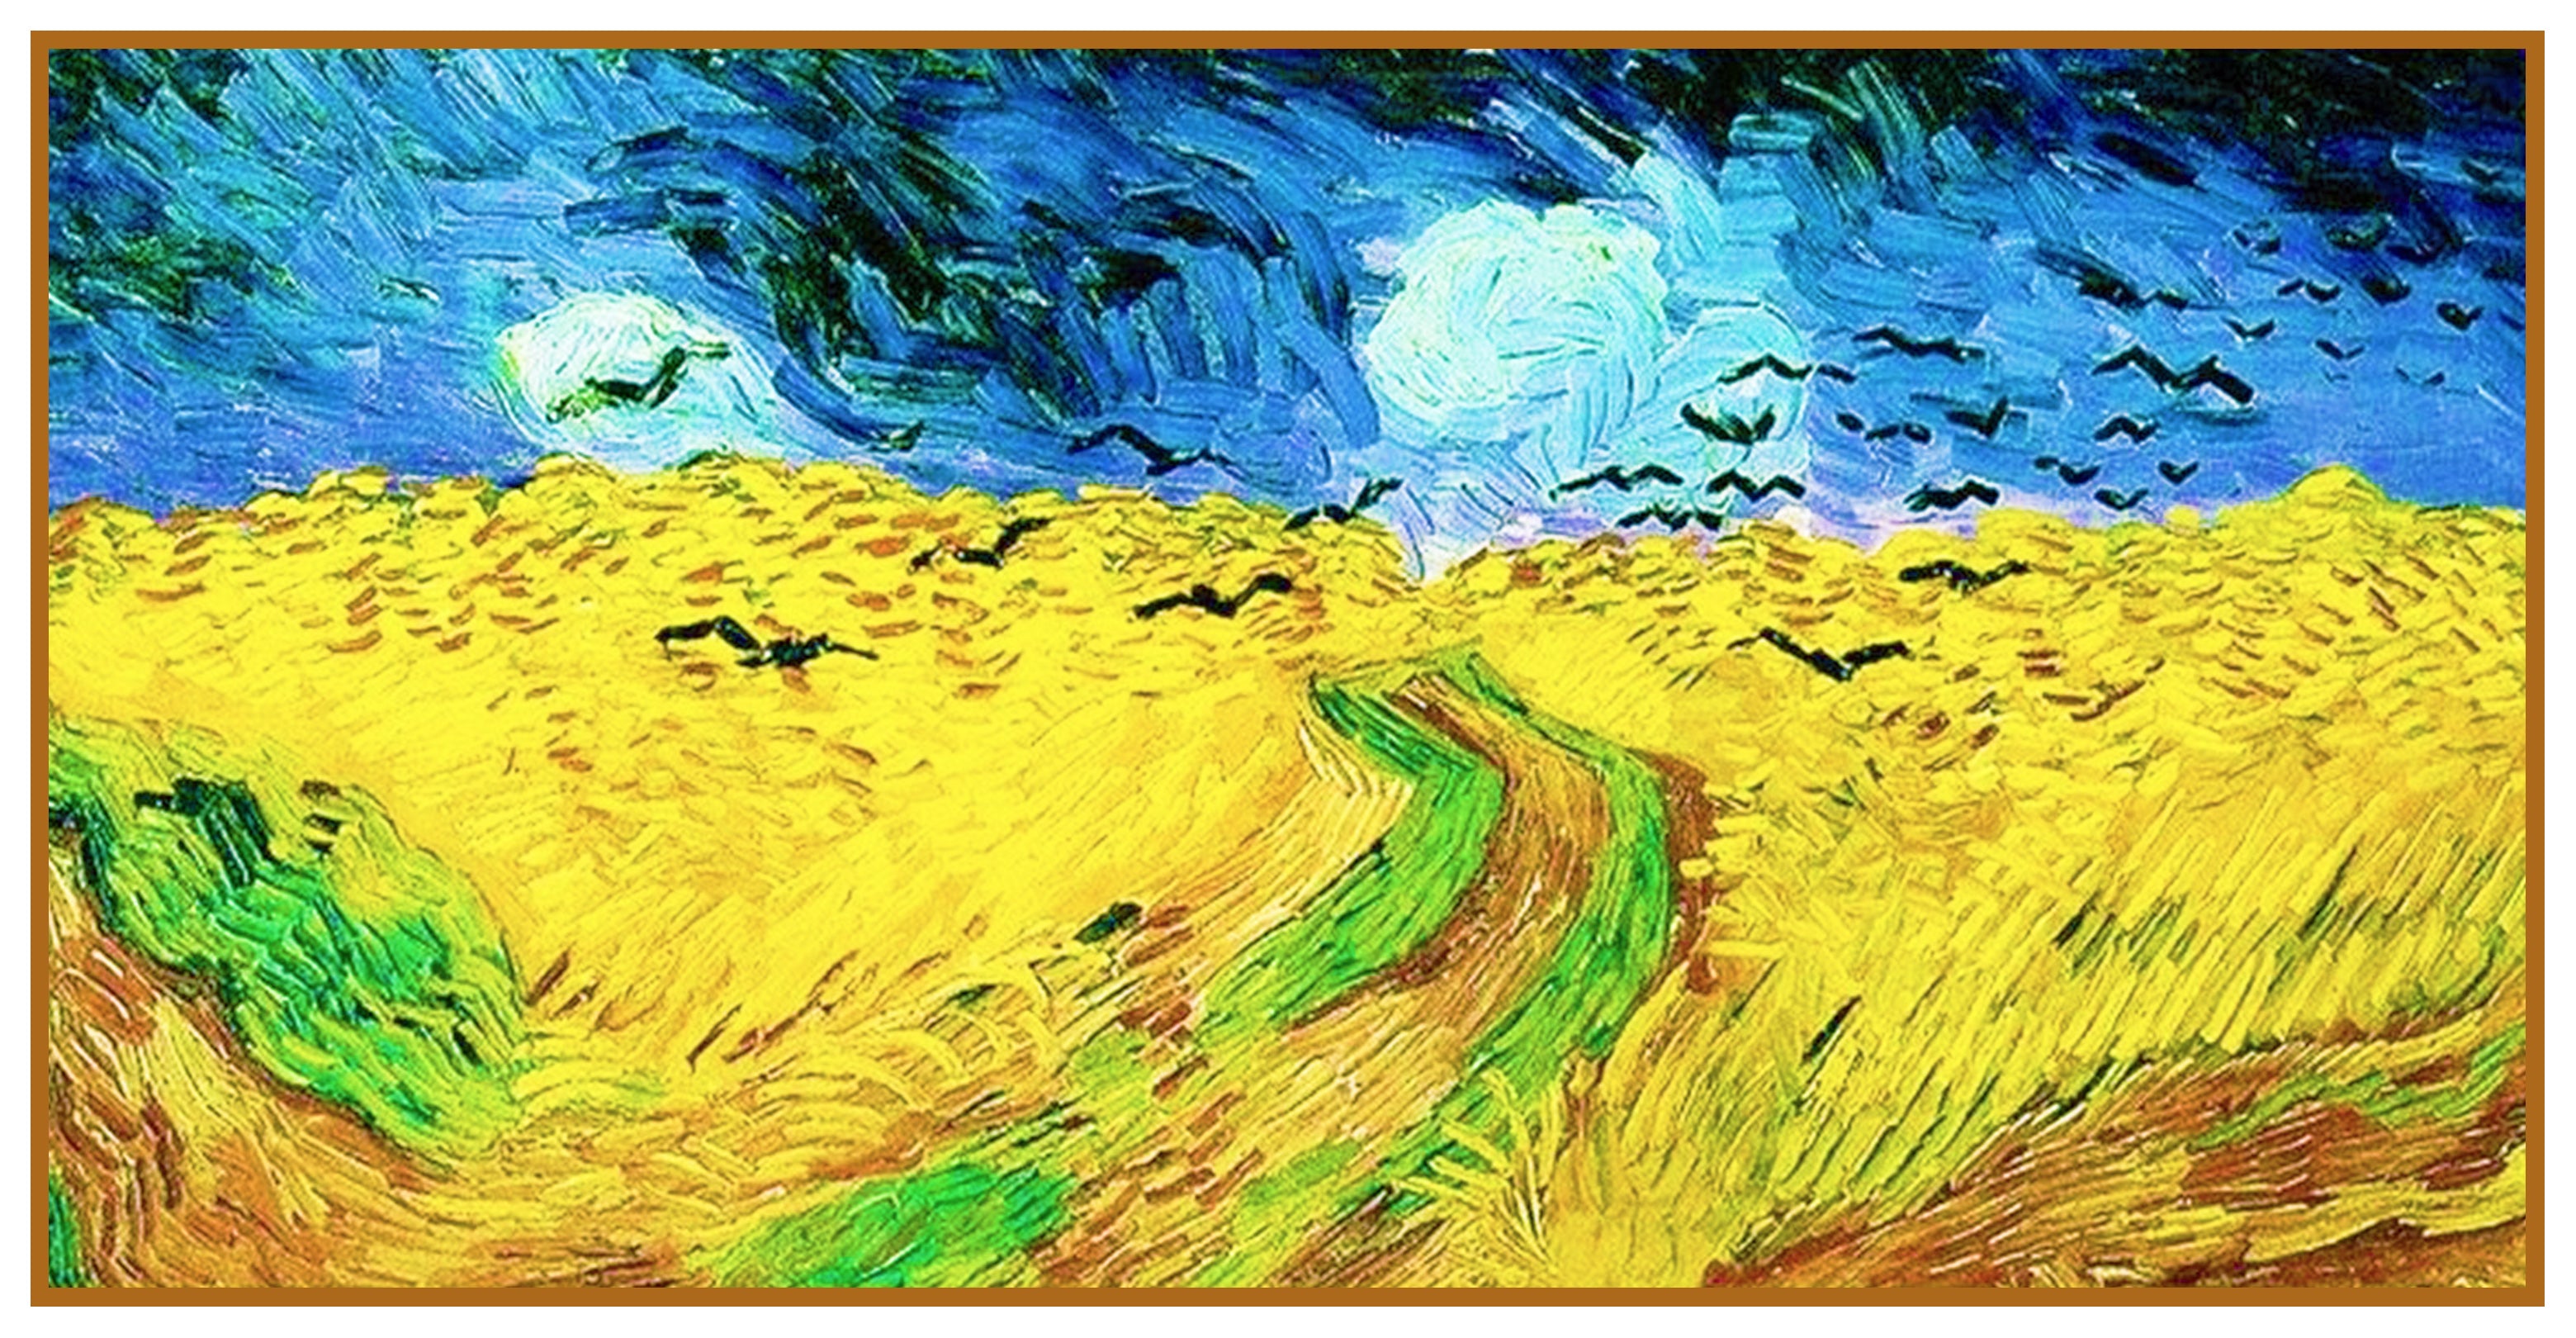 Vincent van Gogh: The Paris Wheat Field